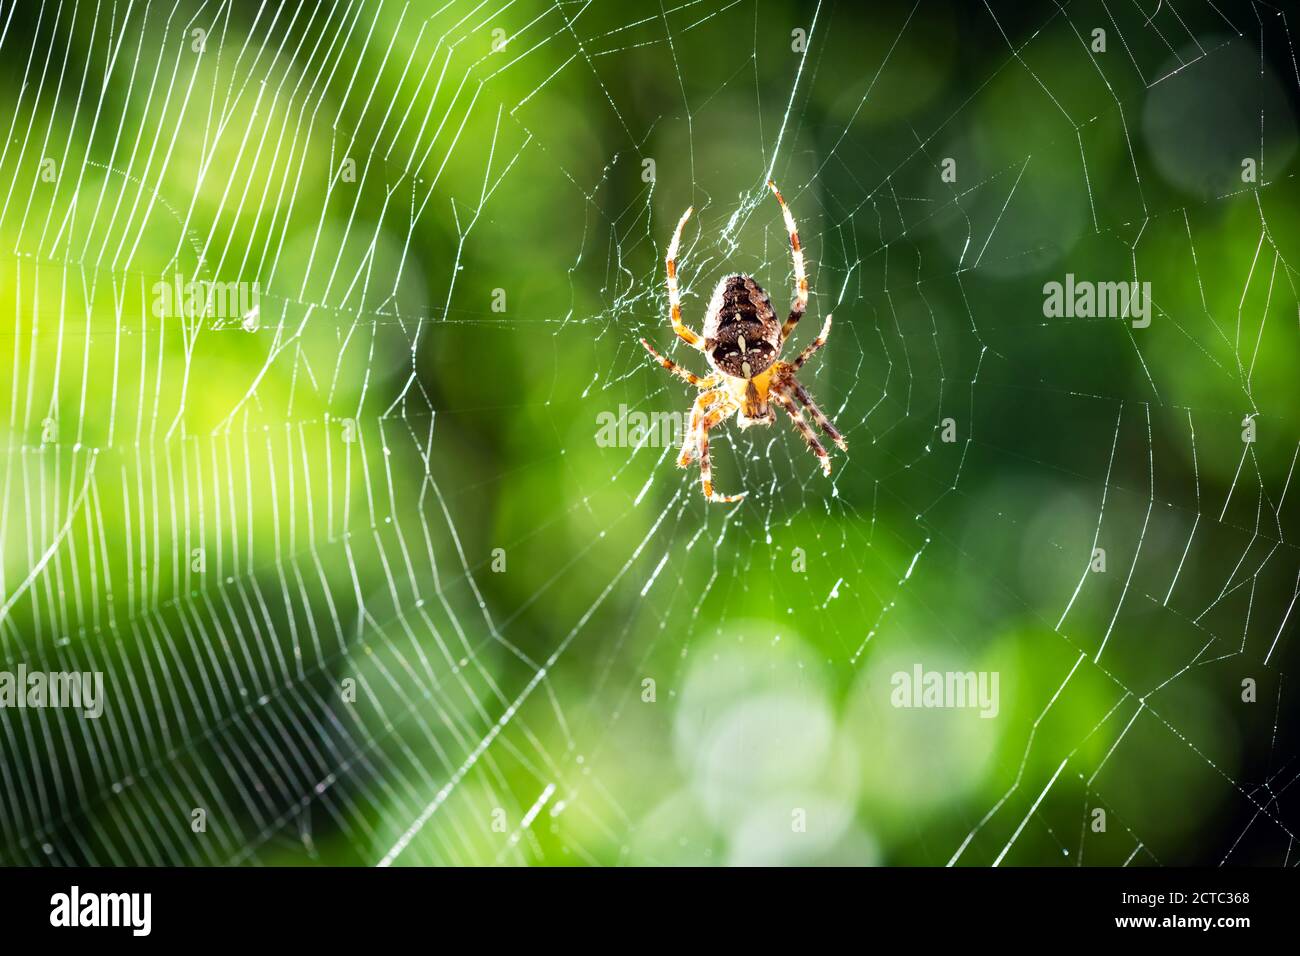 Araignée sur toile d'araignée sur fond d'arbres verts flous. Prise de vue macro. Photographie d'insectes Banque D'Images